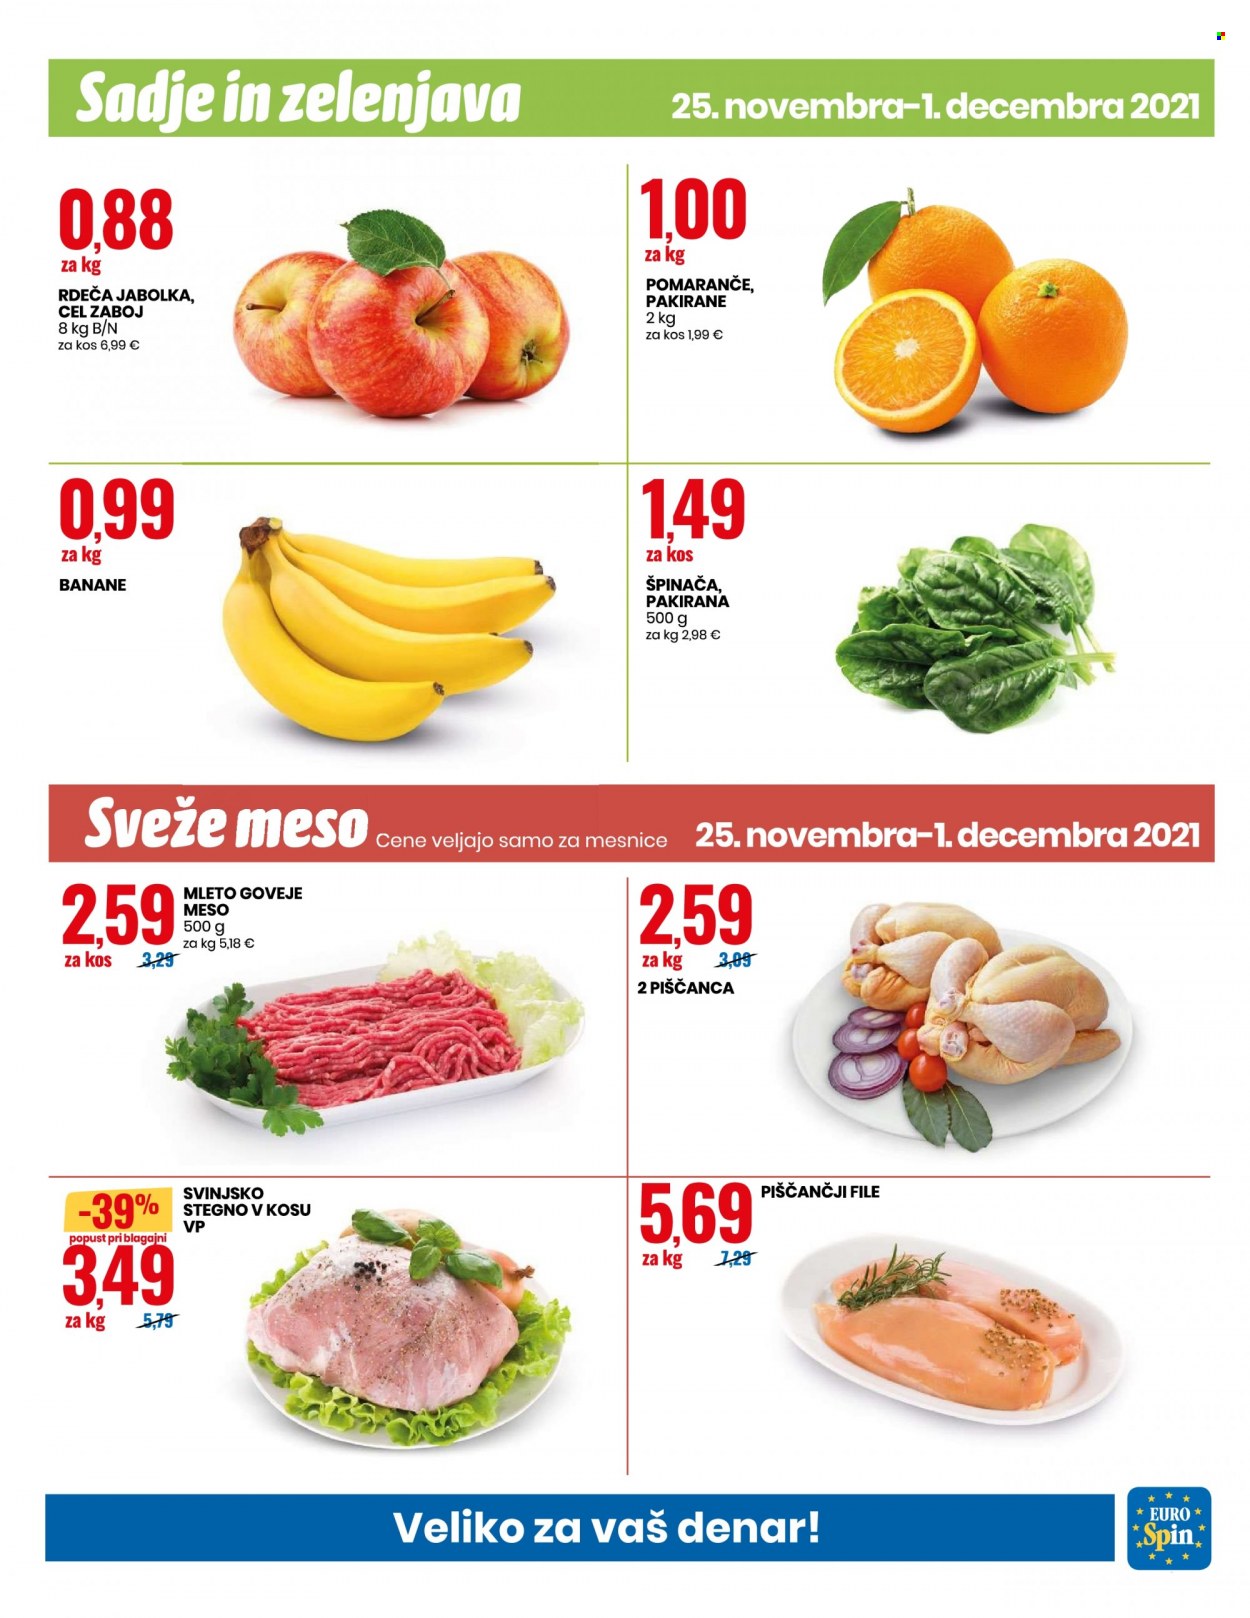 thumbnail - EuroSpin katalog - 25.11.2021 - 1.12.2021 - Ponudba izdelkov - piščančji file, stegno, piščančje meso, goveje meso, svinjsko stegno, svinjsko meso, jabolka, pomaranče, špinača. Stran 11.